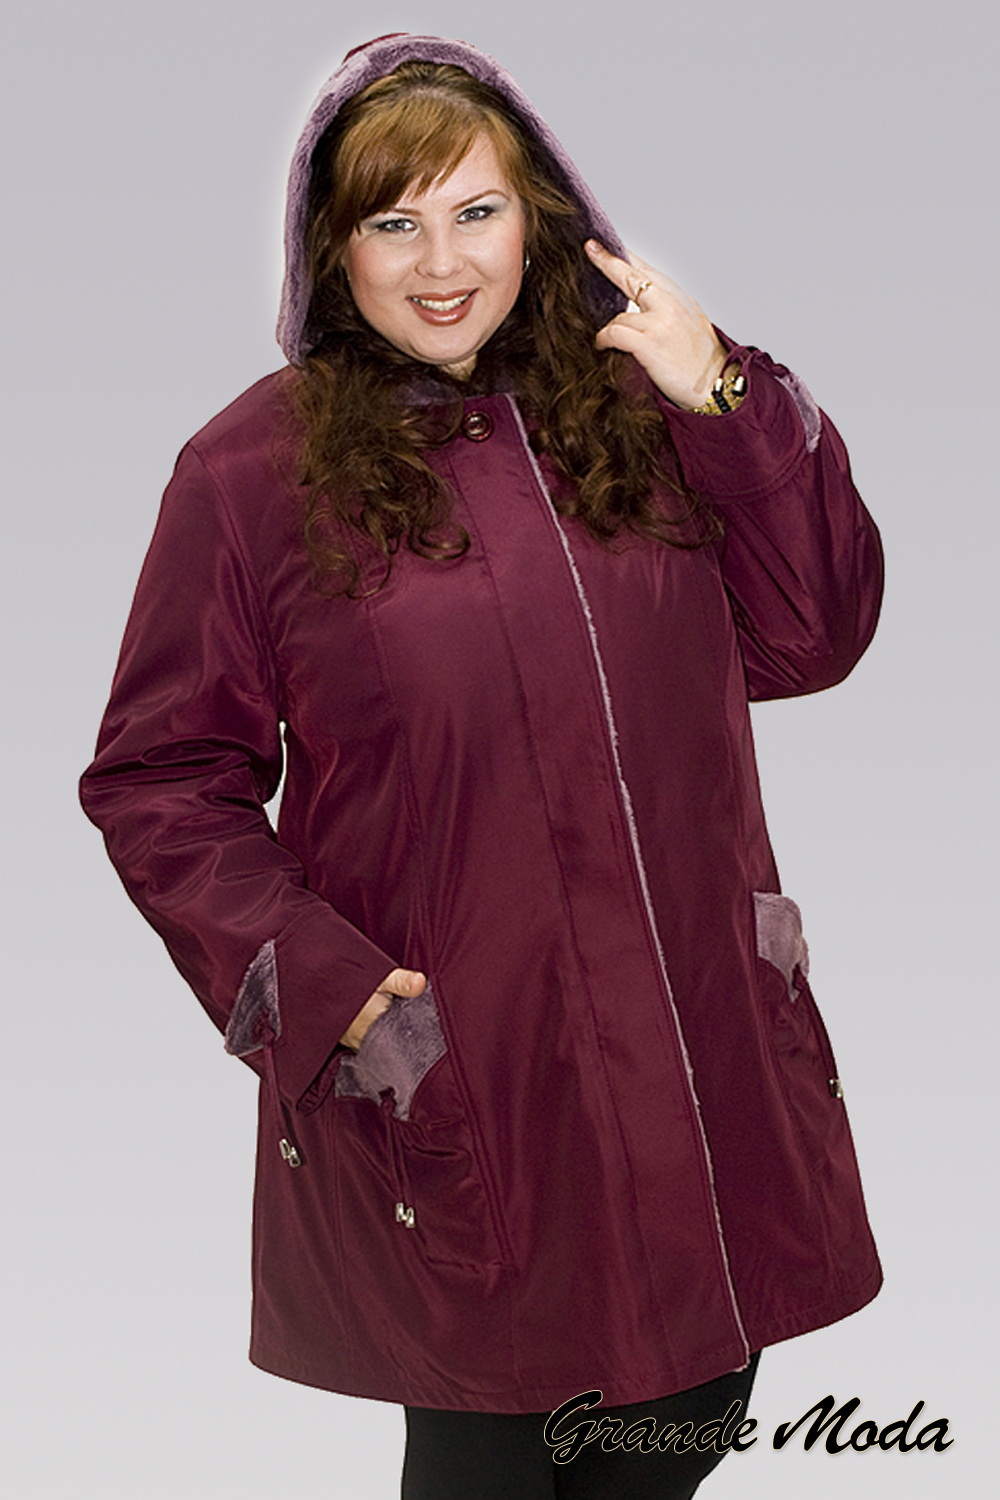 Осенние куртки больших размеров купить. Зимняя куртка женская валберис 60 размер. Зимняя куртка женская валберис 62 размер. Куртки для полных женщин. Куртки женские для полных.